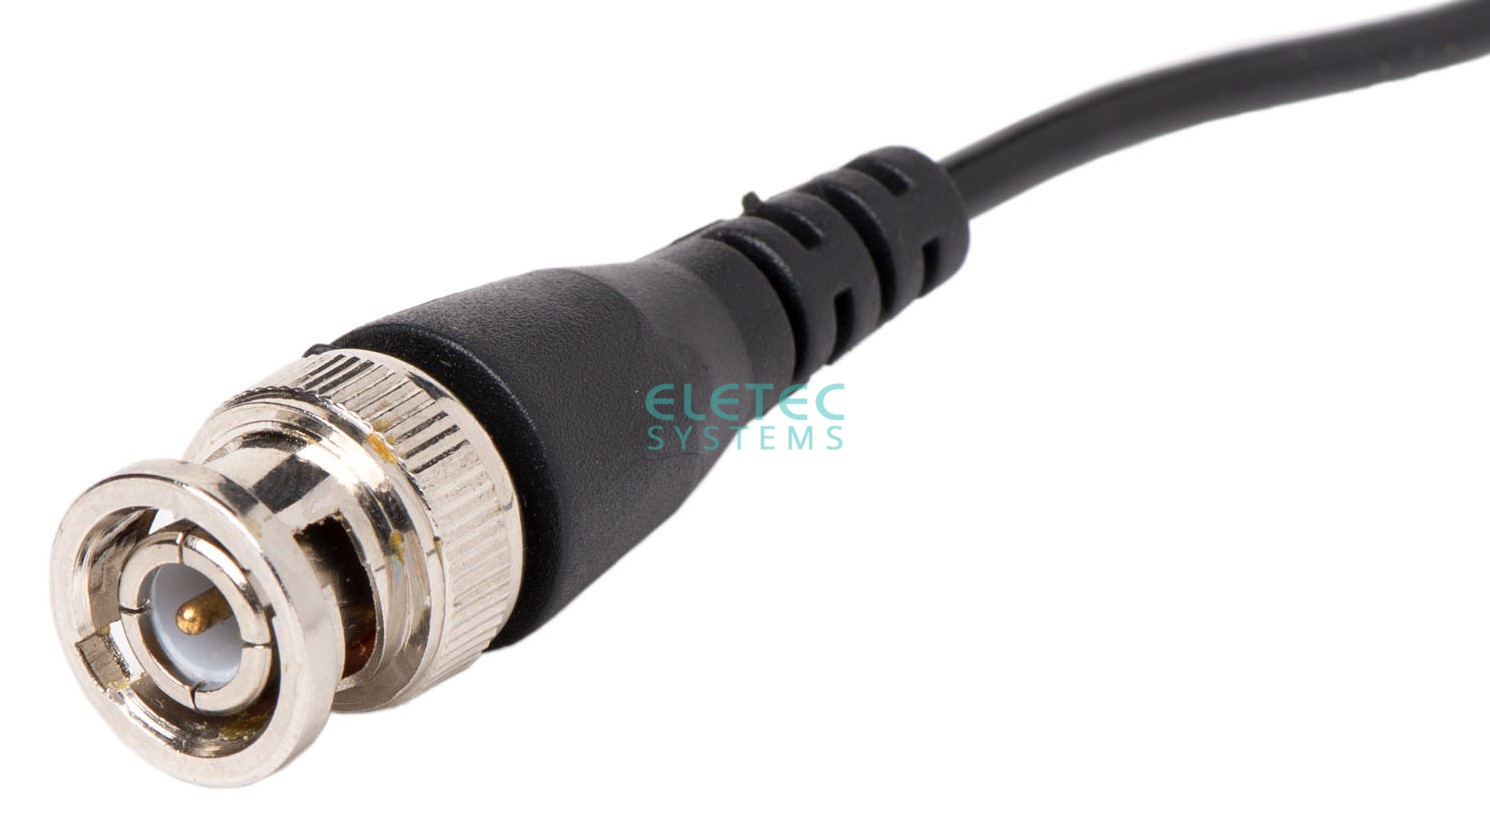 картинка Штекер BNC c кабелем (30 см) Eletec Systems